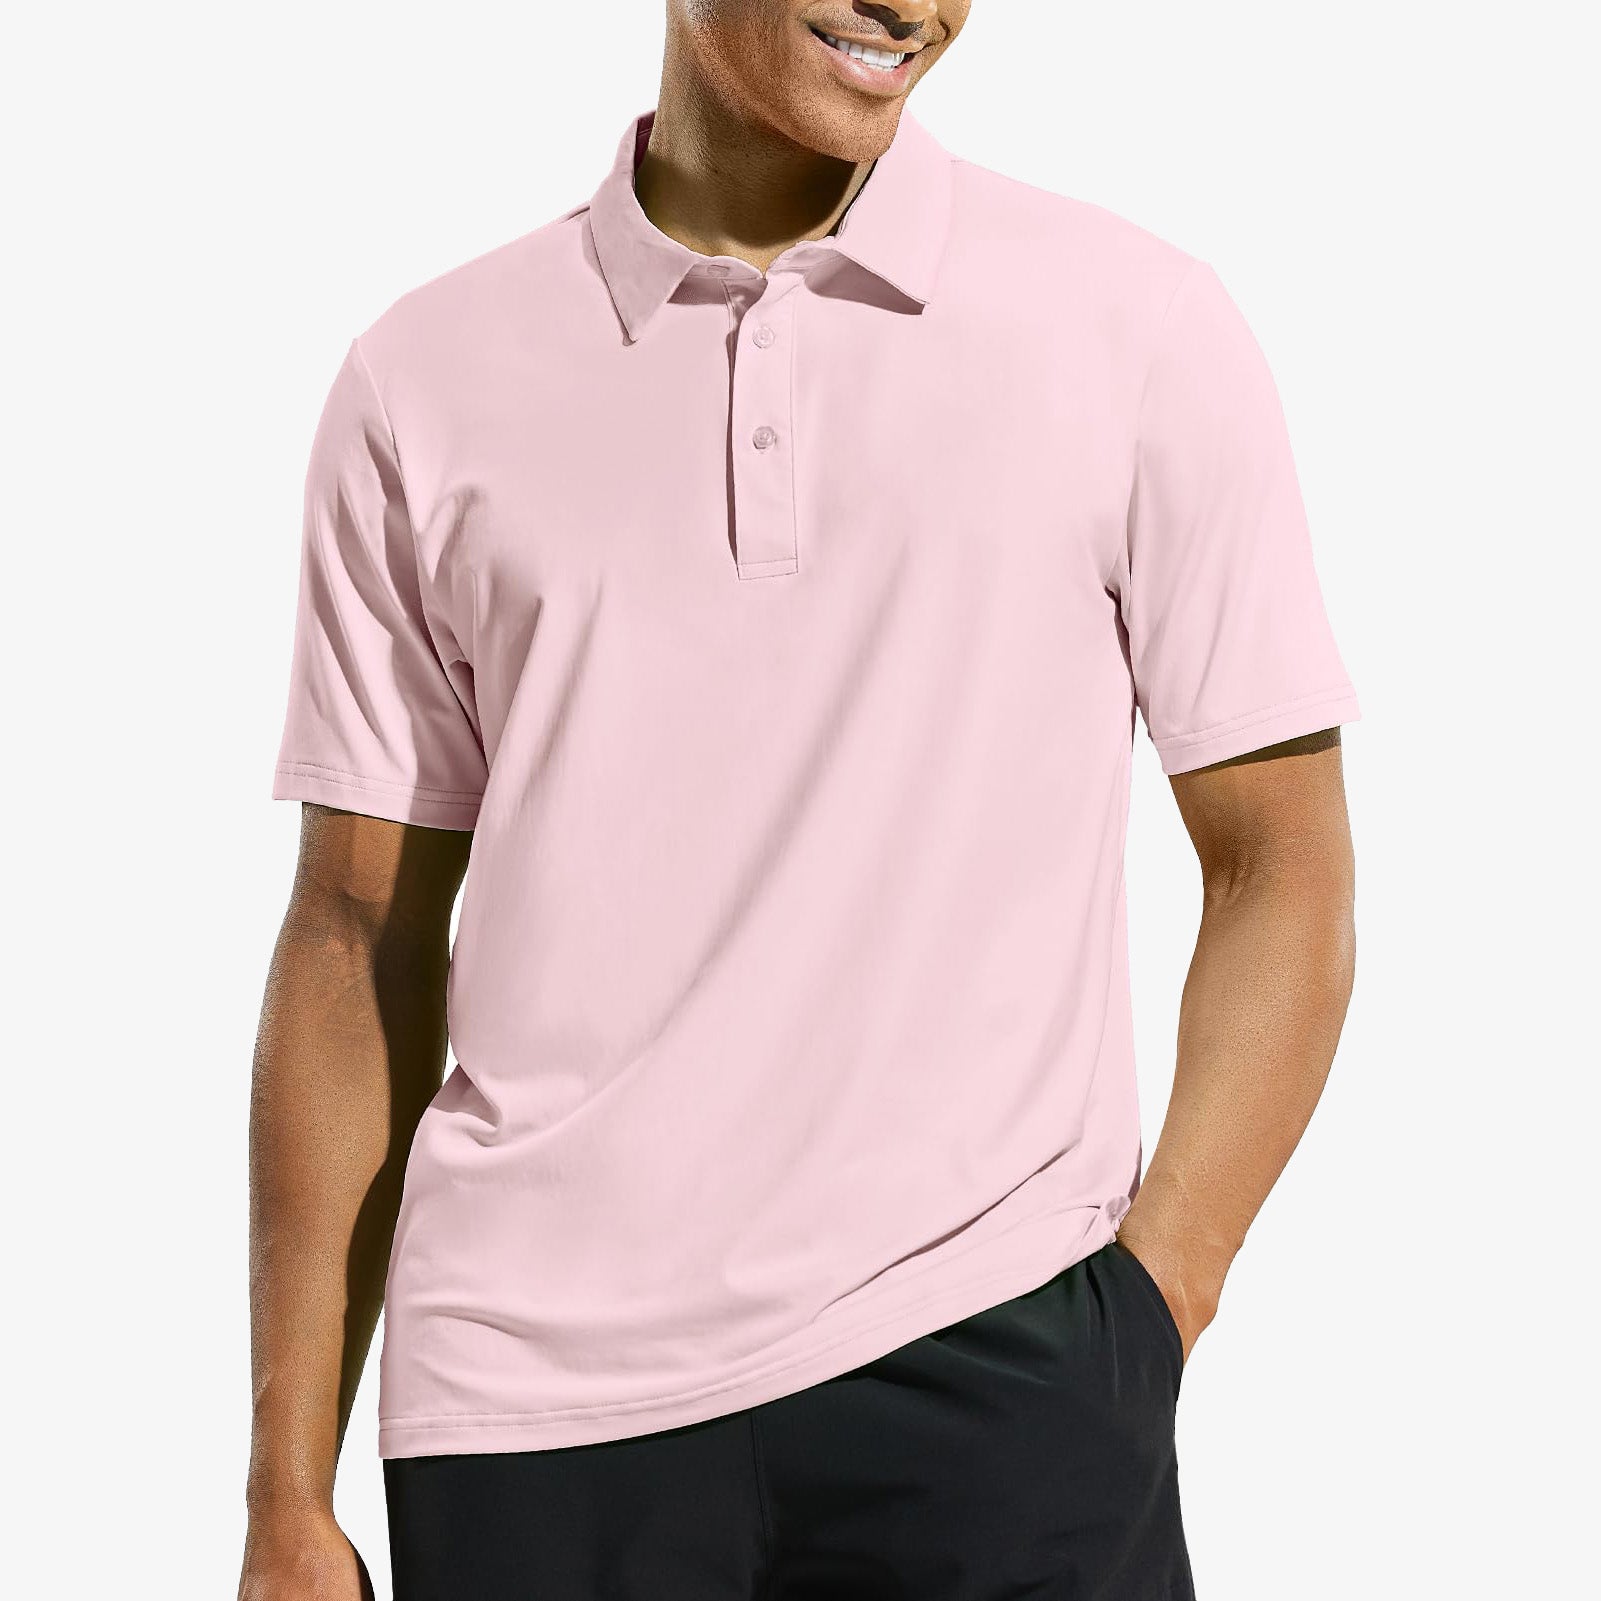 Herren Golf-Poloshirt Schnell trocknende Sonnenschutz-Poloshirts